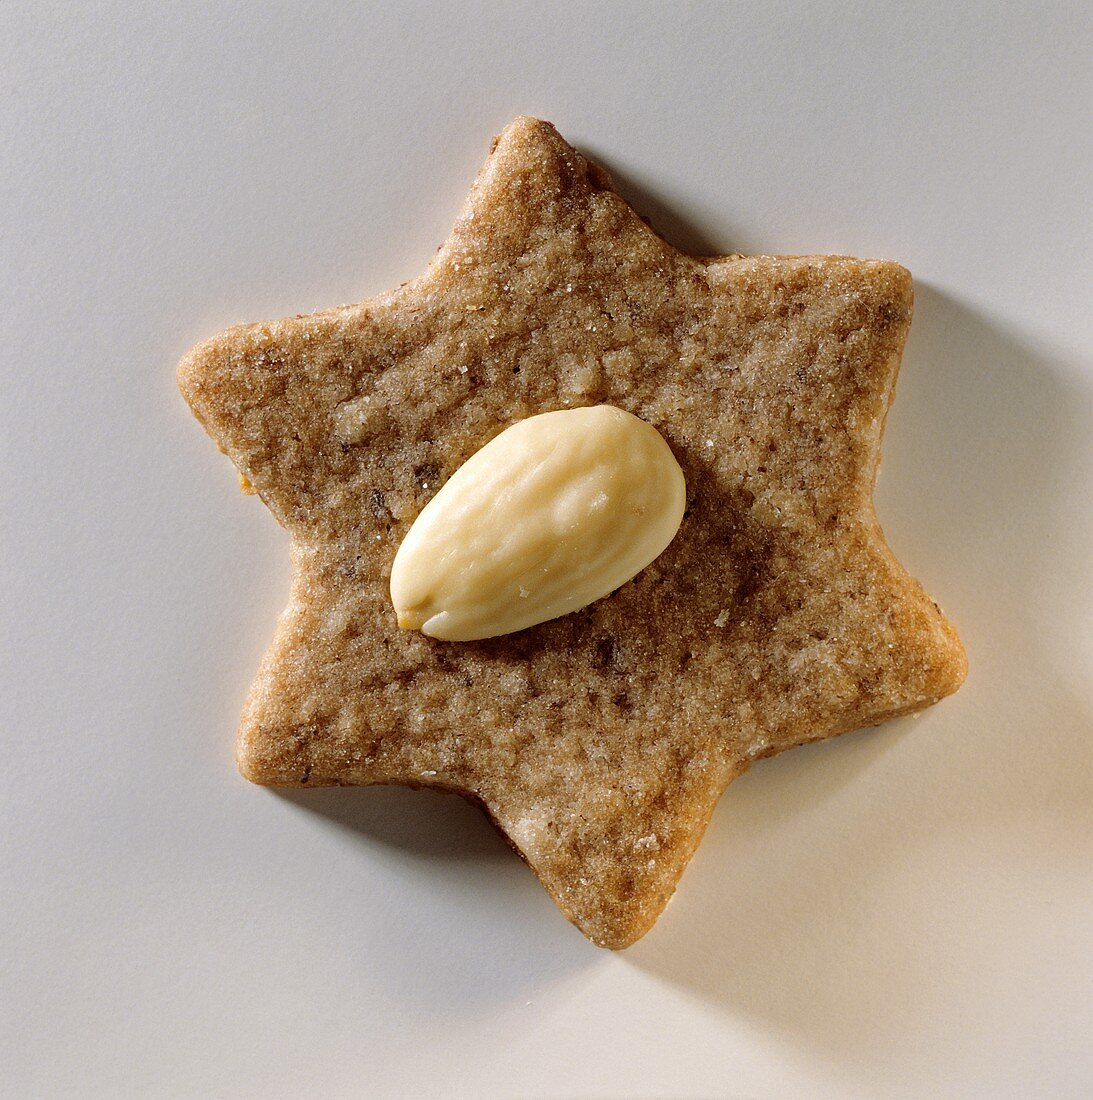 An almond star